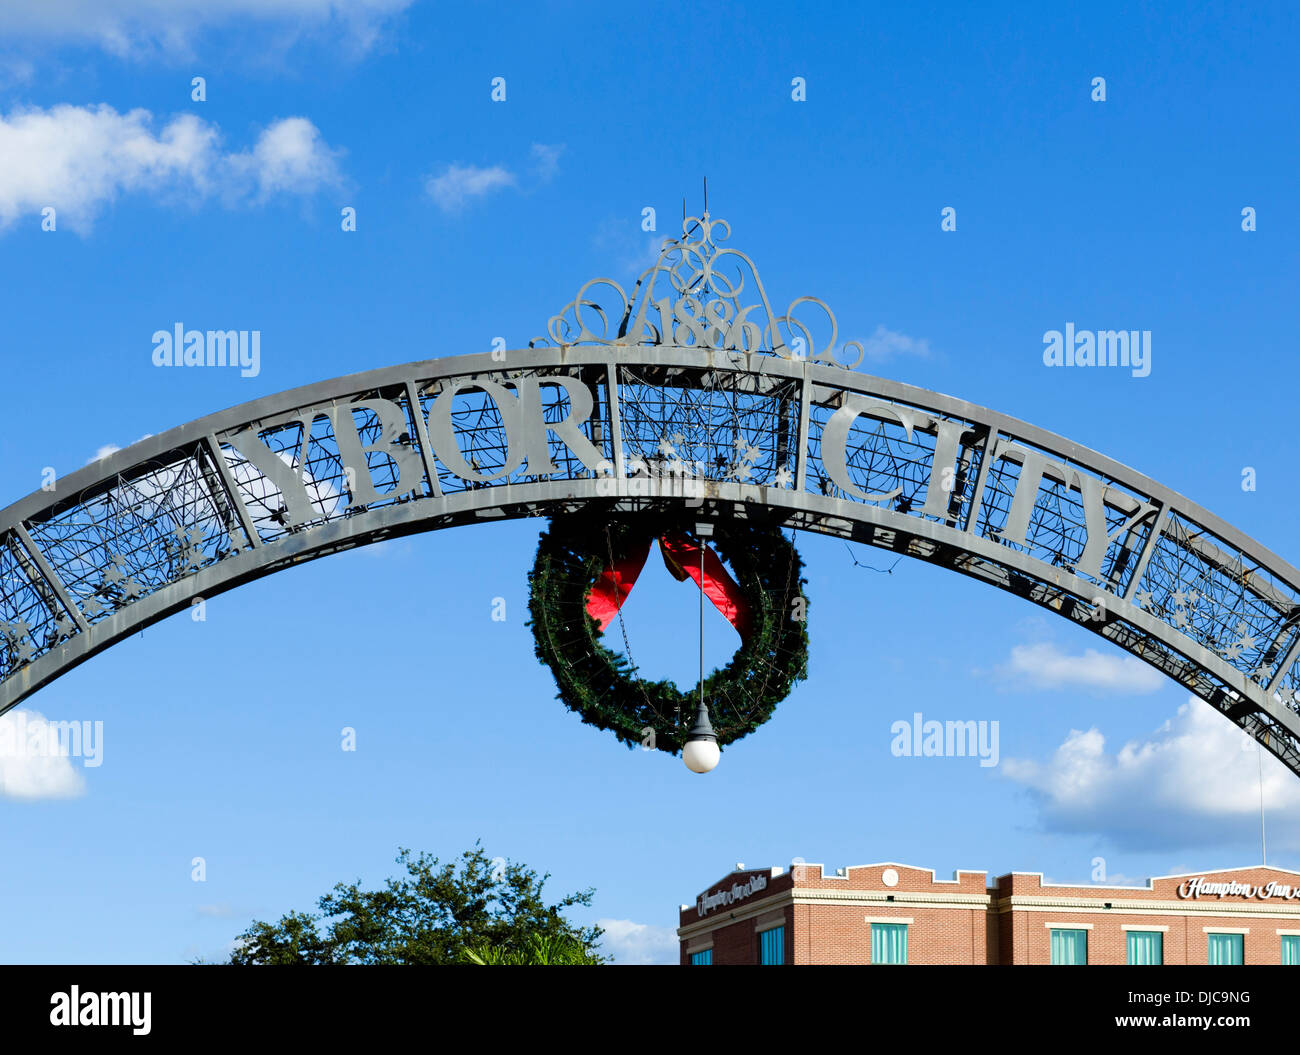 Schild am Eingang zum historischen Ybor City, Tampa, Florida, USA Stockfoto